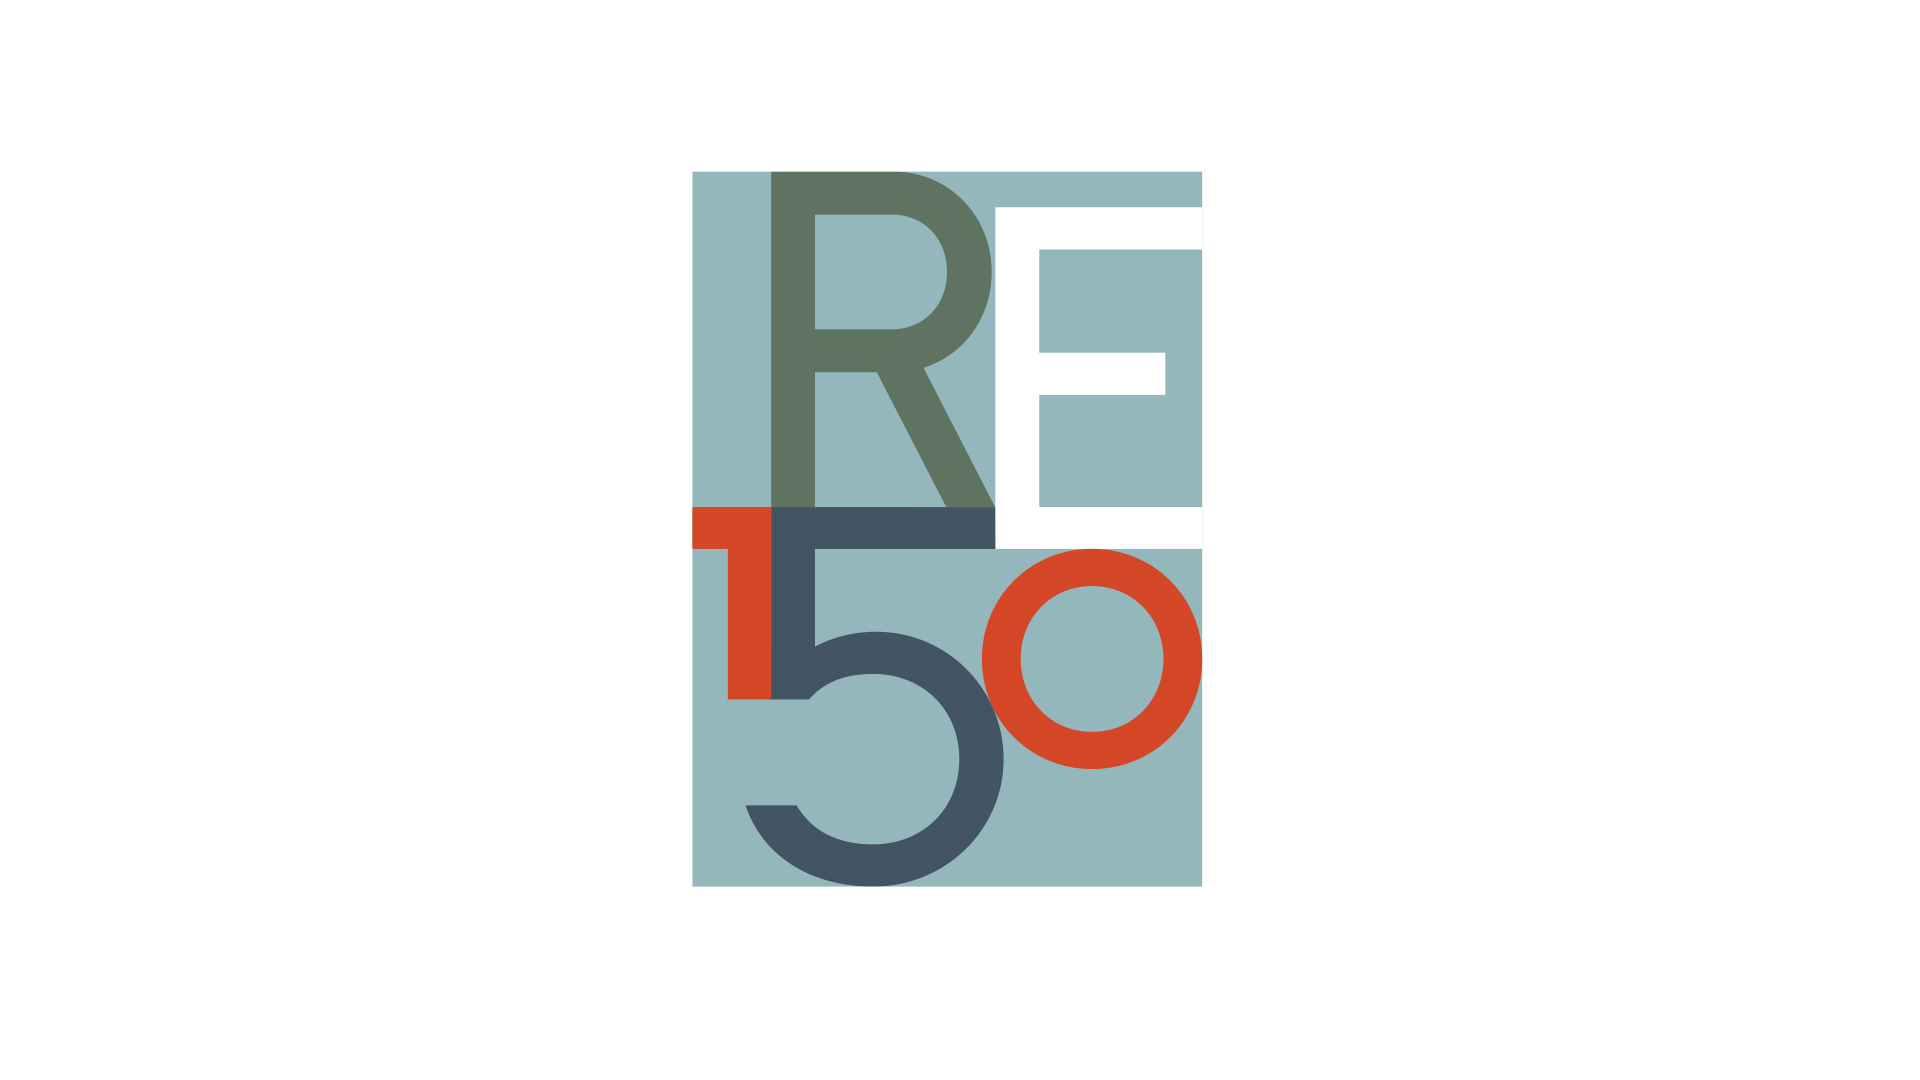 re150 logo on white